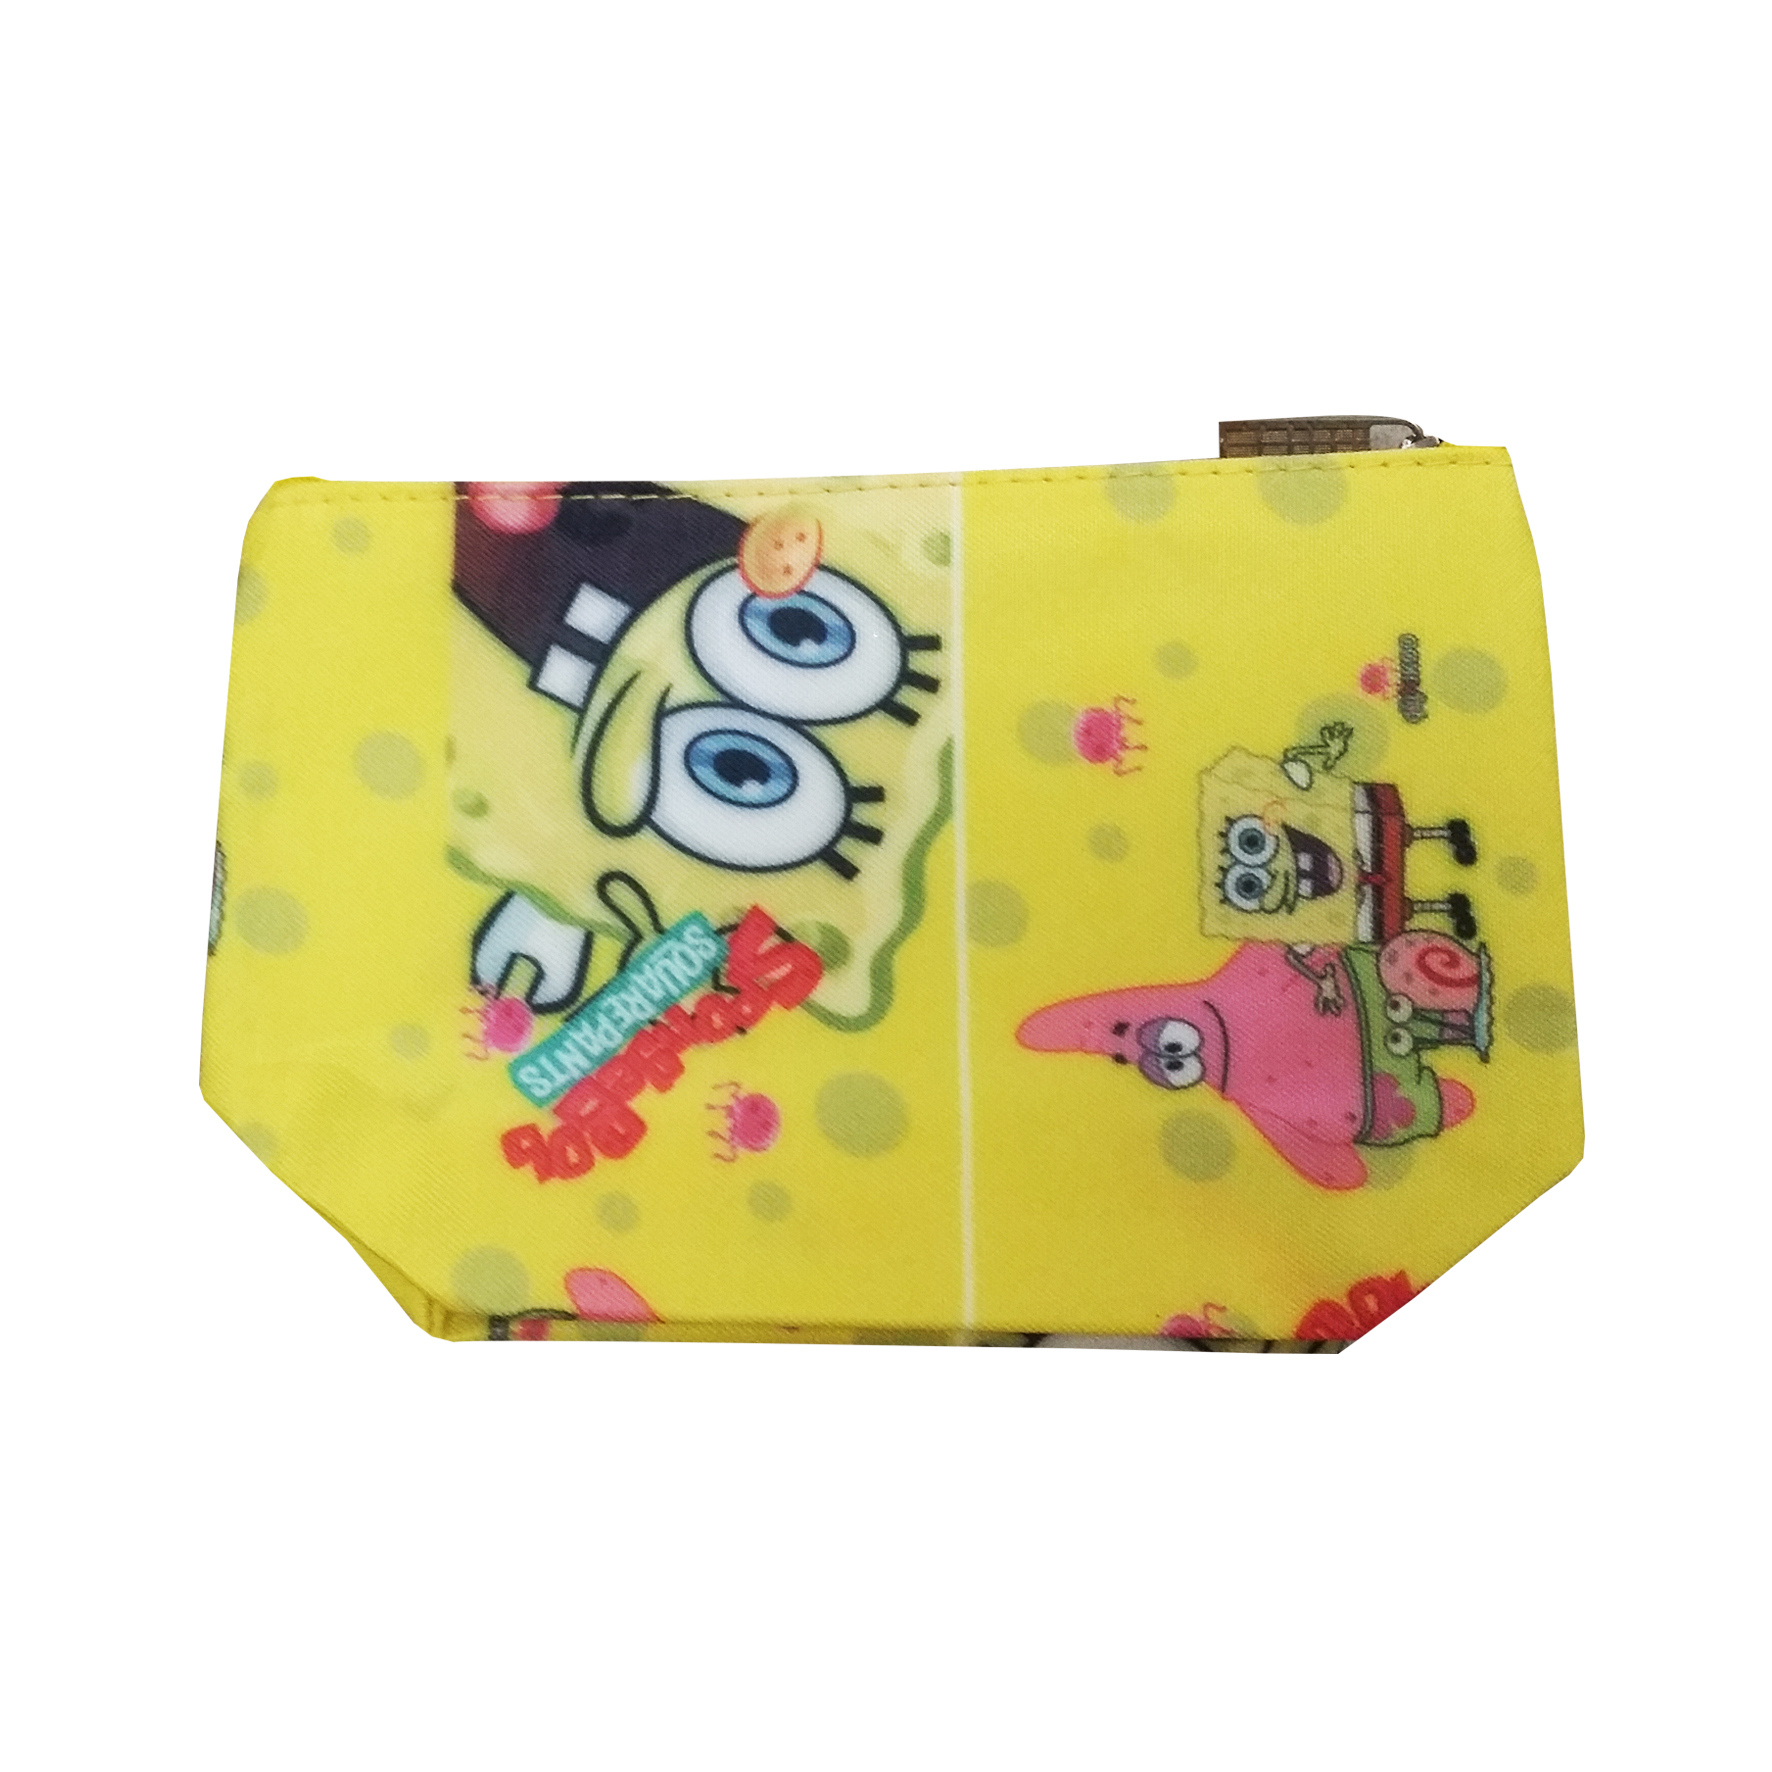 کیف لوازم آرایشی زنانه مدل Sponge Bob